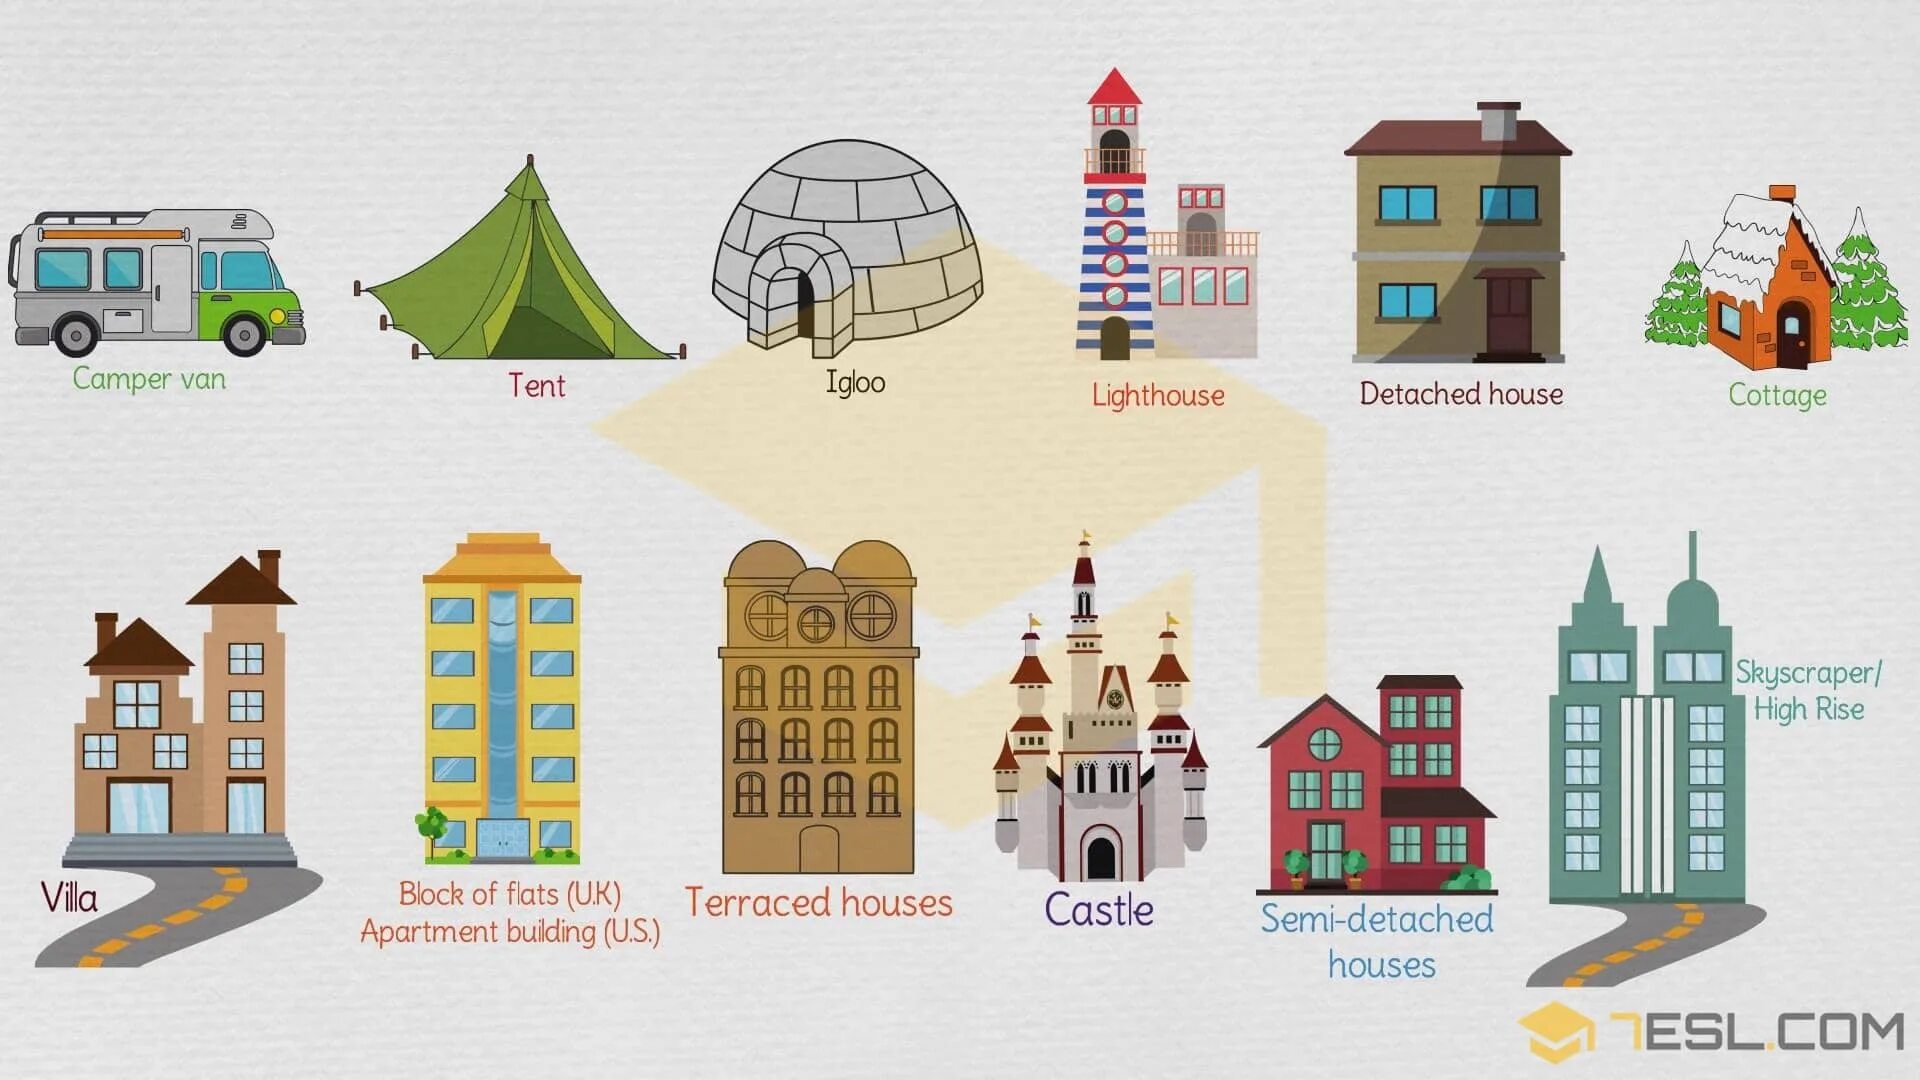 Как будет вид на английском. Иллюстрации разных домов. Изображения различных архитектурных построек. Картинки здания дома. Здания разной архитектуры для дошкольников.